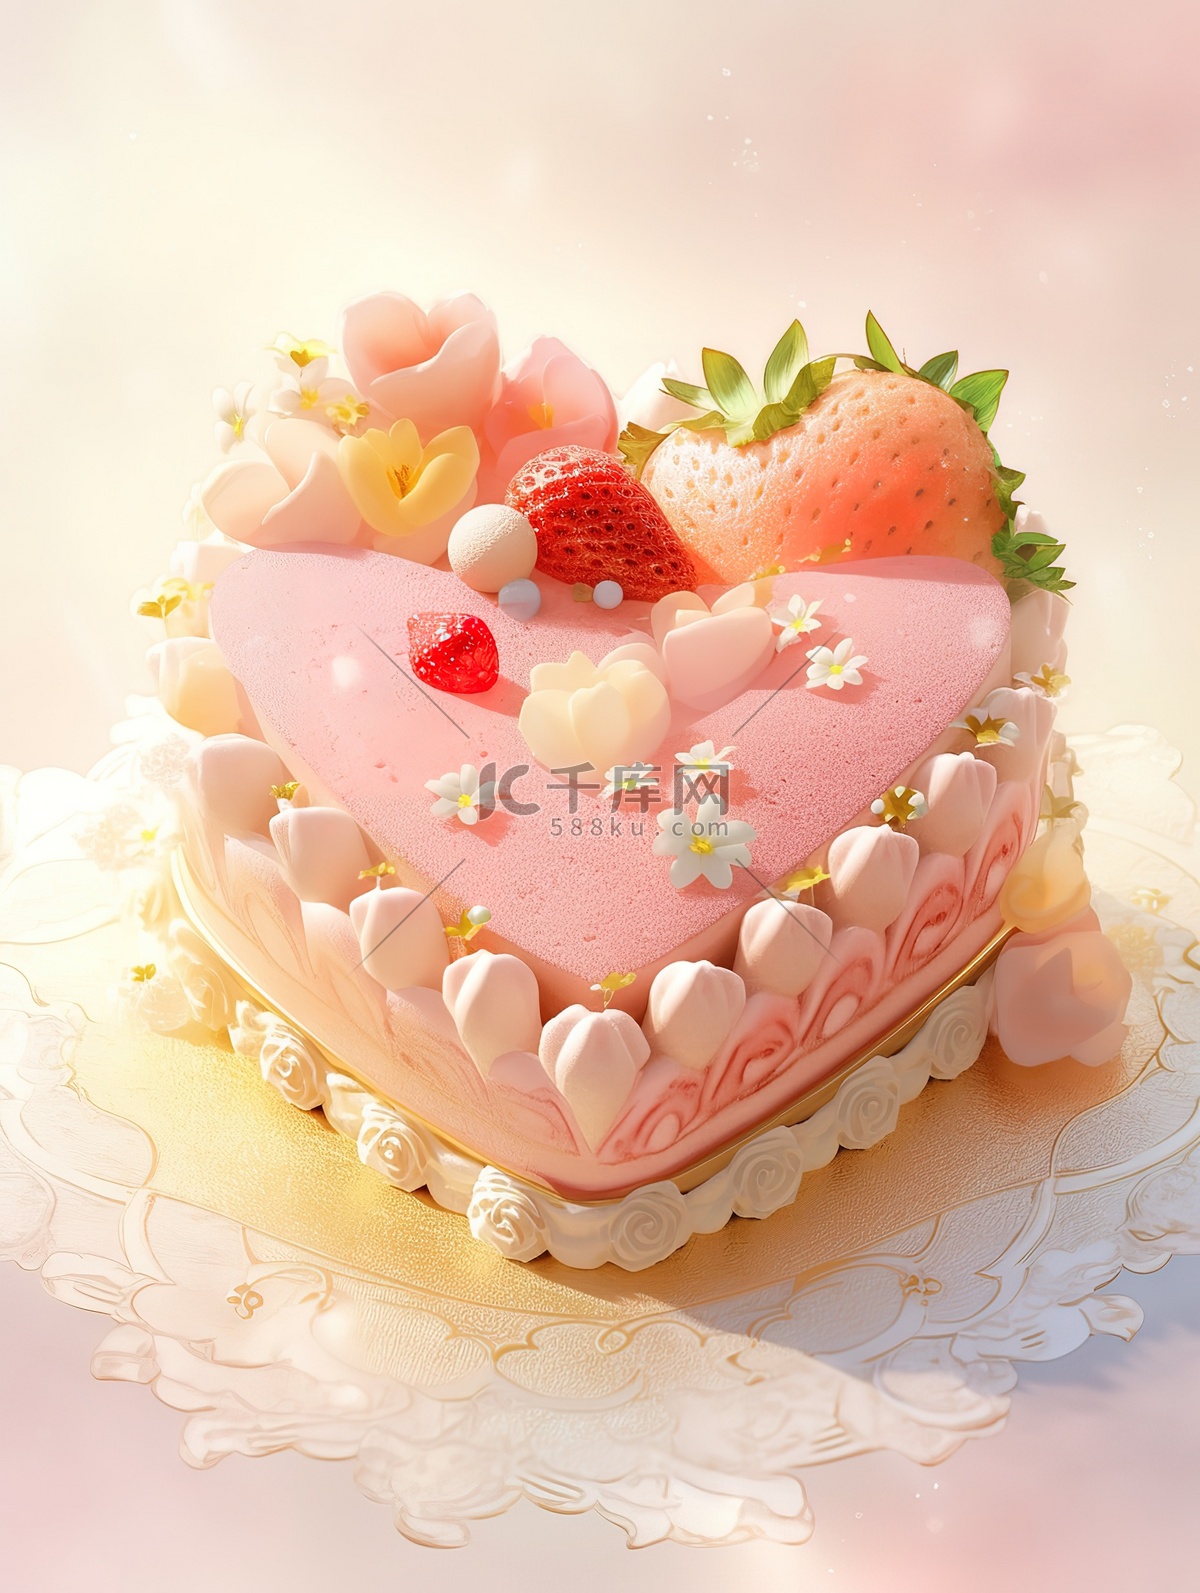 粉色少女心小鹿蛋糕_蛋糕 生日蛋糕 生日会 少女心_图片素材_照片 - 知鱼素材